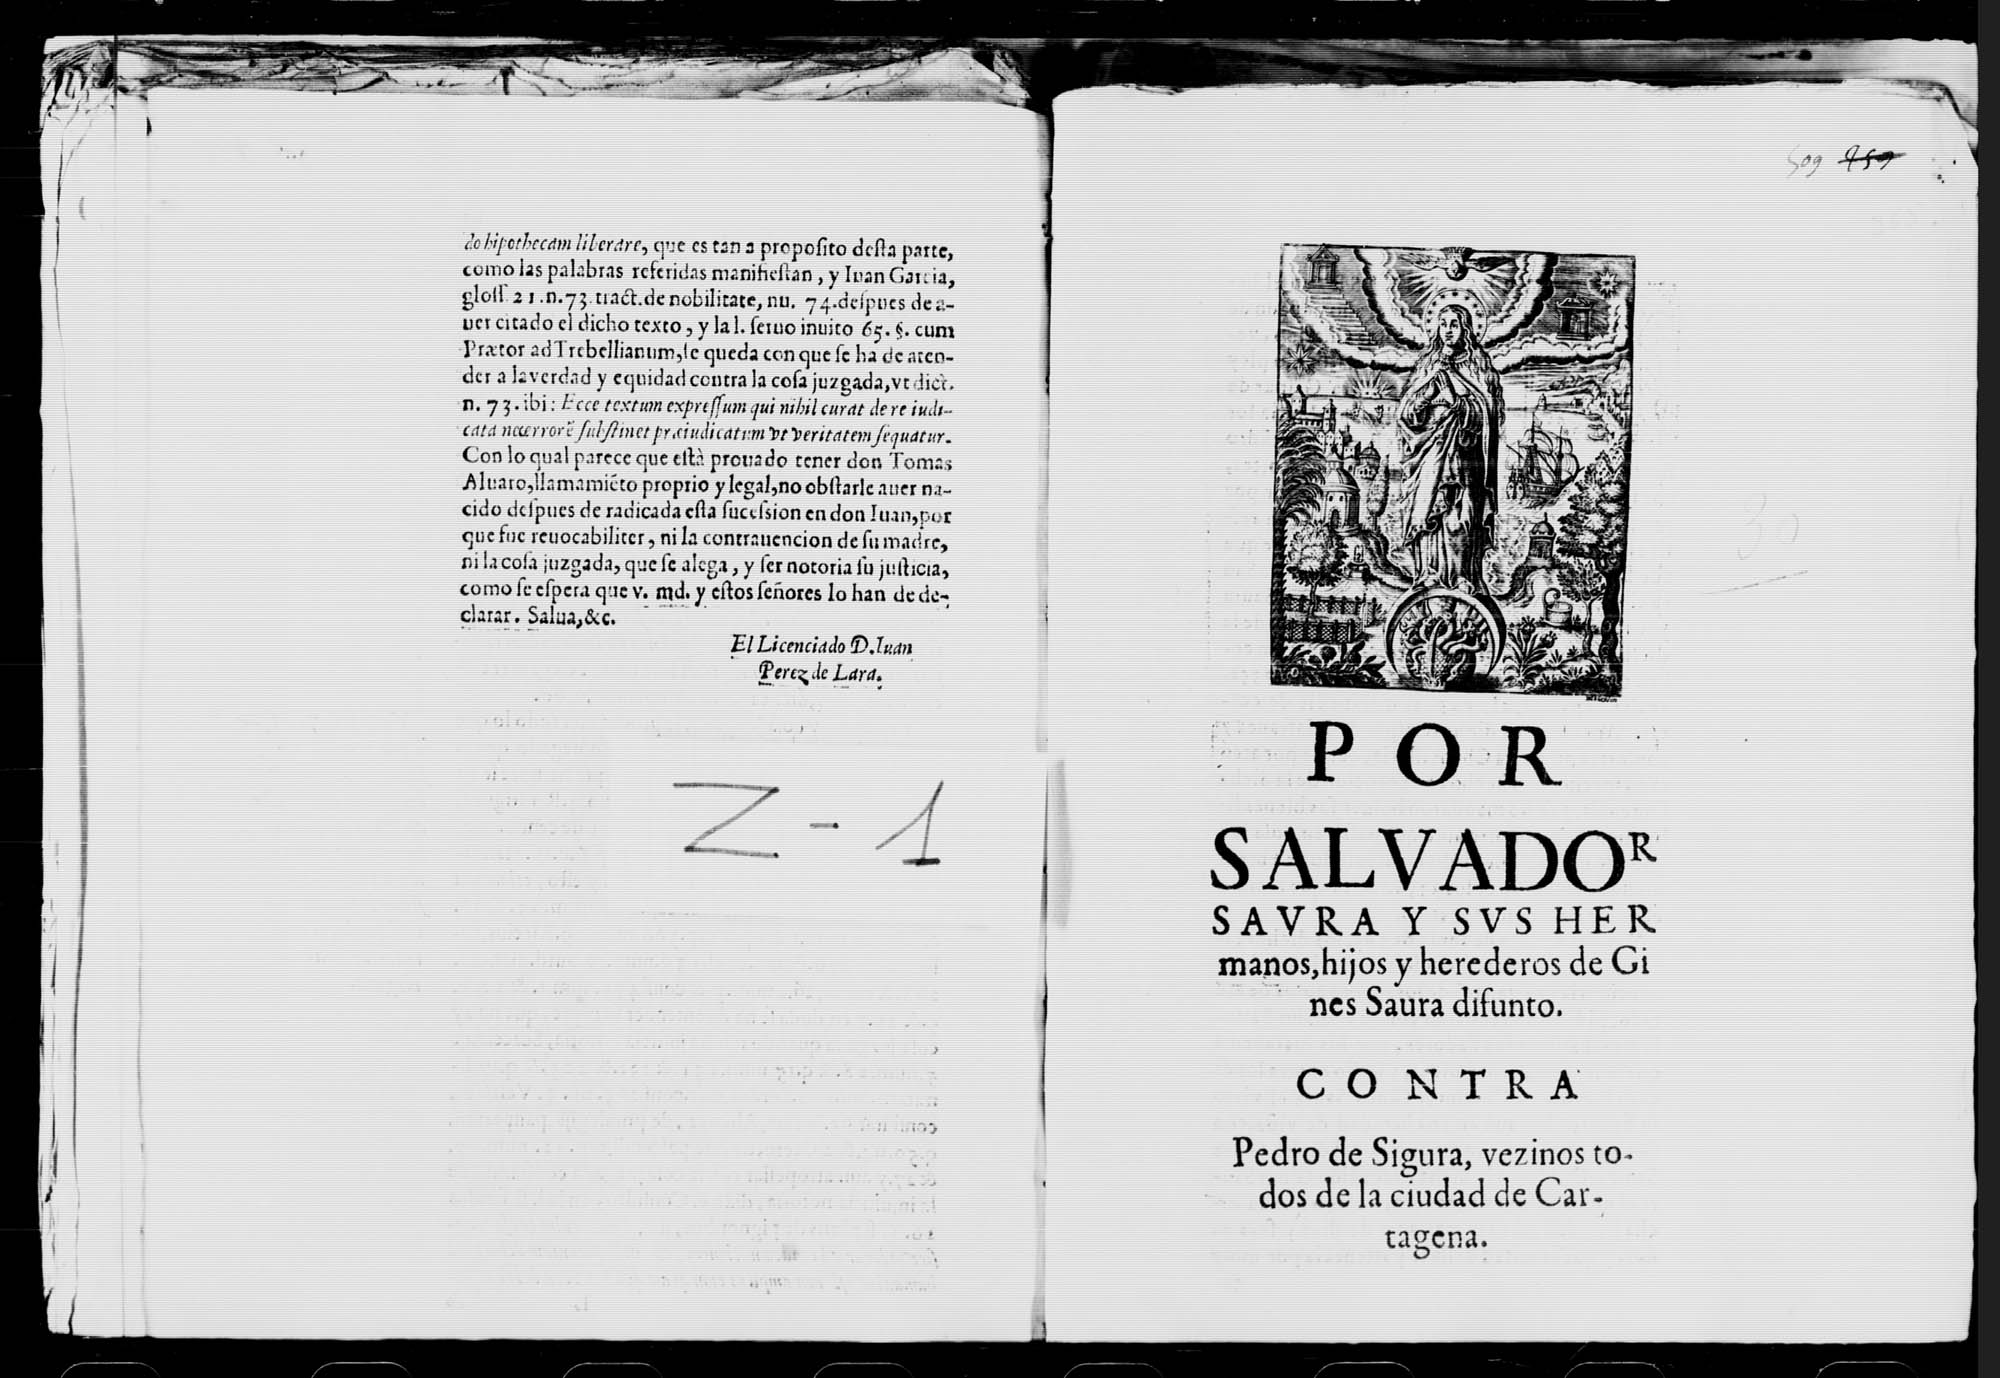 Por Salvador Saura y sus hermanos, hijos y herederos de Ginés Saura, difunto, contra Pedro de Segura, vecinos todos de la ciudad de Cartagena, sobre pago de cantidades 